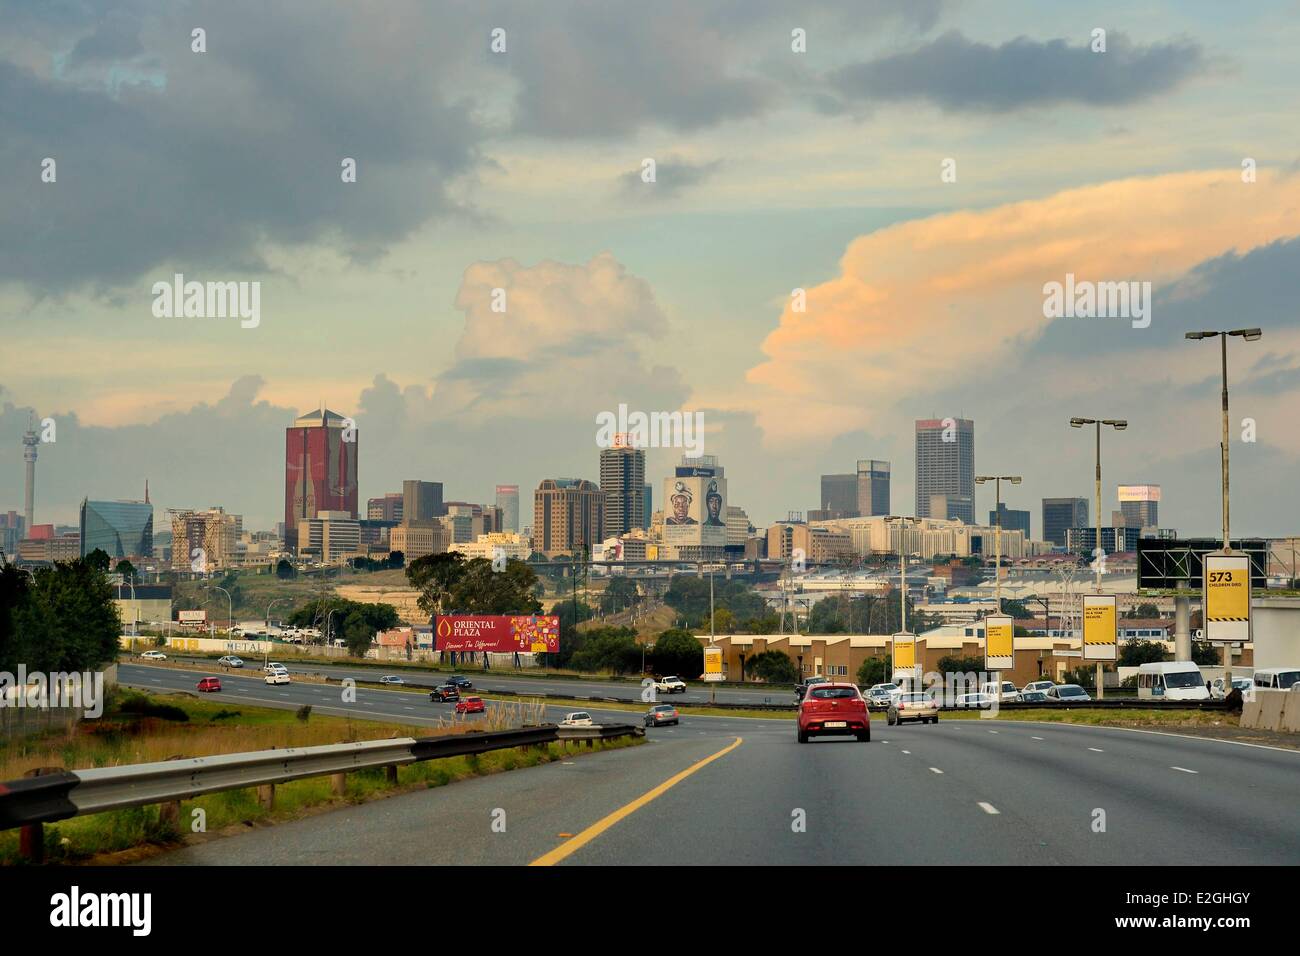 L'Afrique du Sud la province de Gauteng Johannesburg CBD (Central Business District) gratte-ciel Banque D'Images